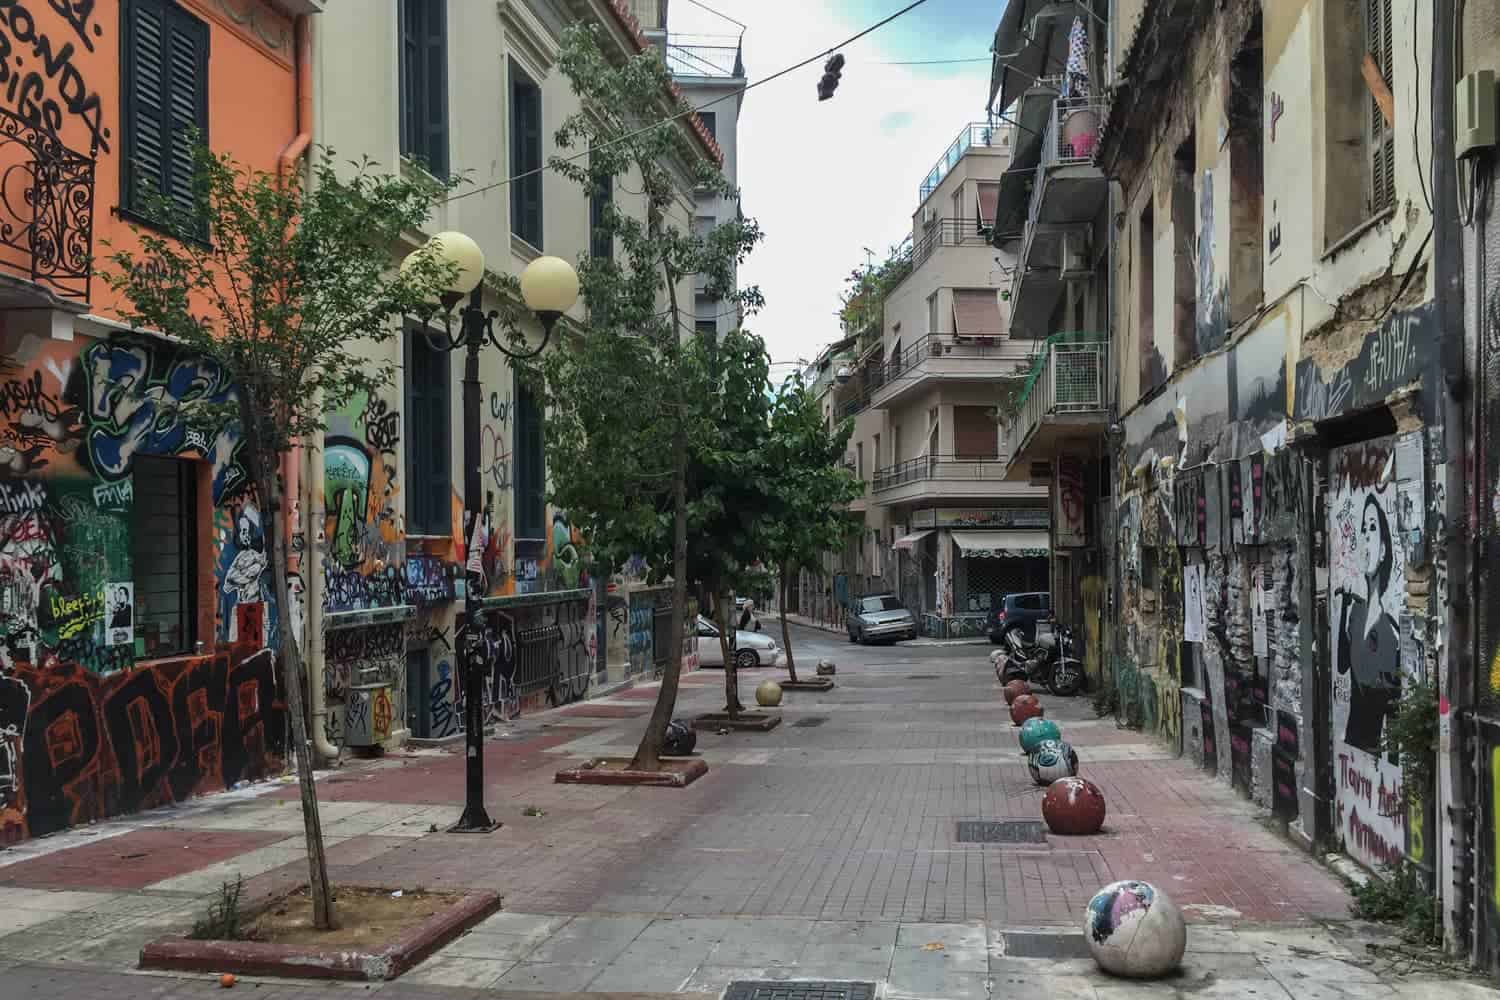 Escena típica de la calle moderna de Atenas